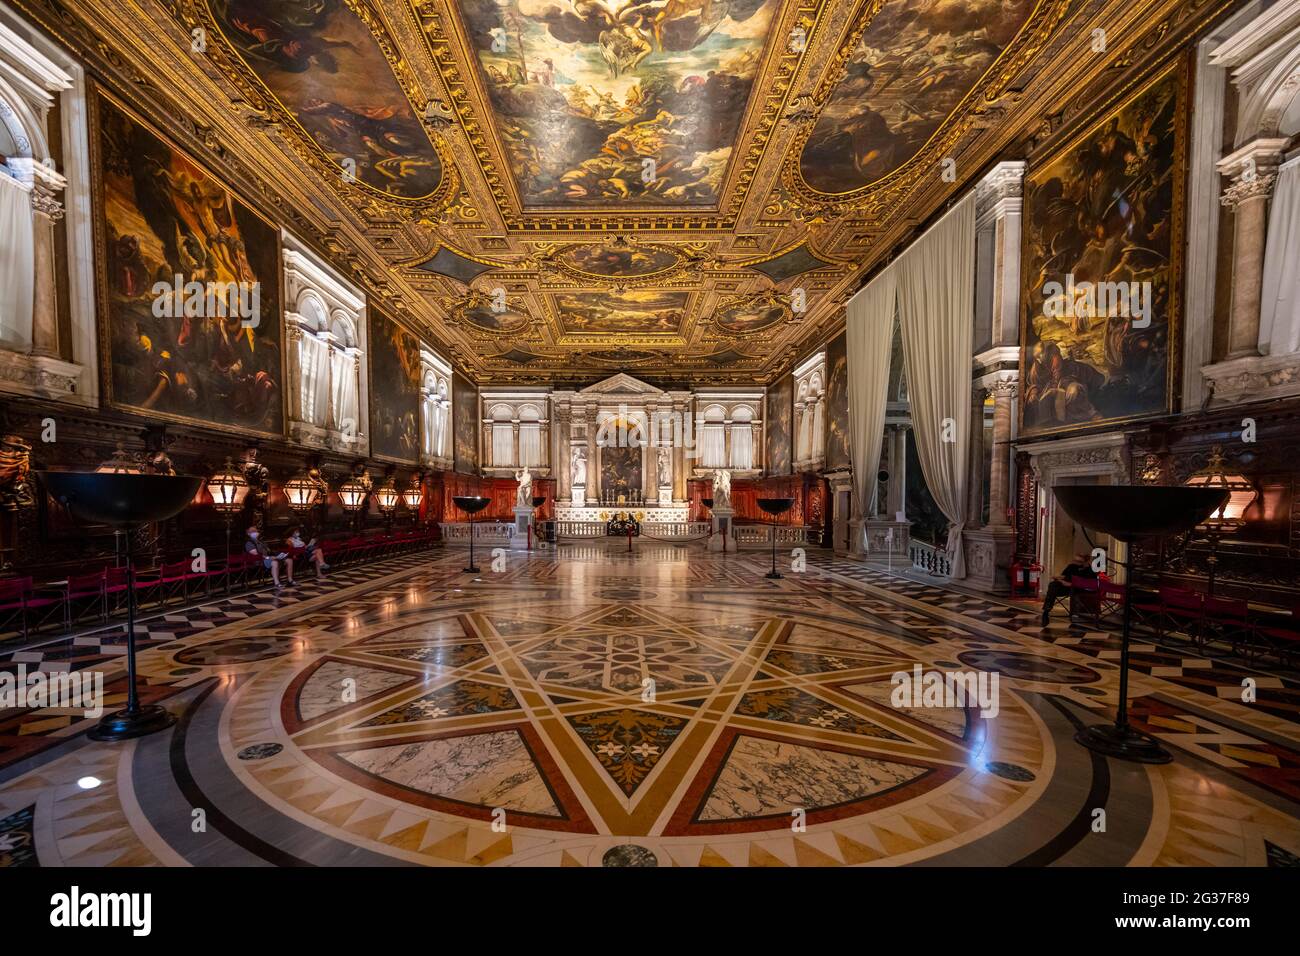 Salle principale, Scuola Grande di San Rocco, magnifique musée d'art, œuvres de l'artiste de la Renaissance Tintoretto, Venise, Vénétie, Italie Banque D'Images